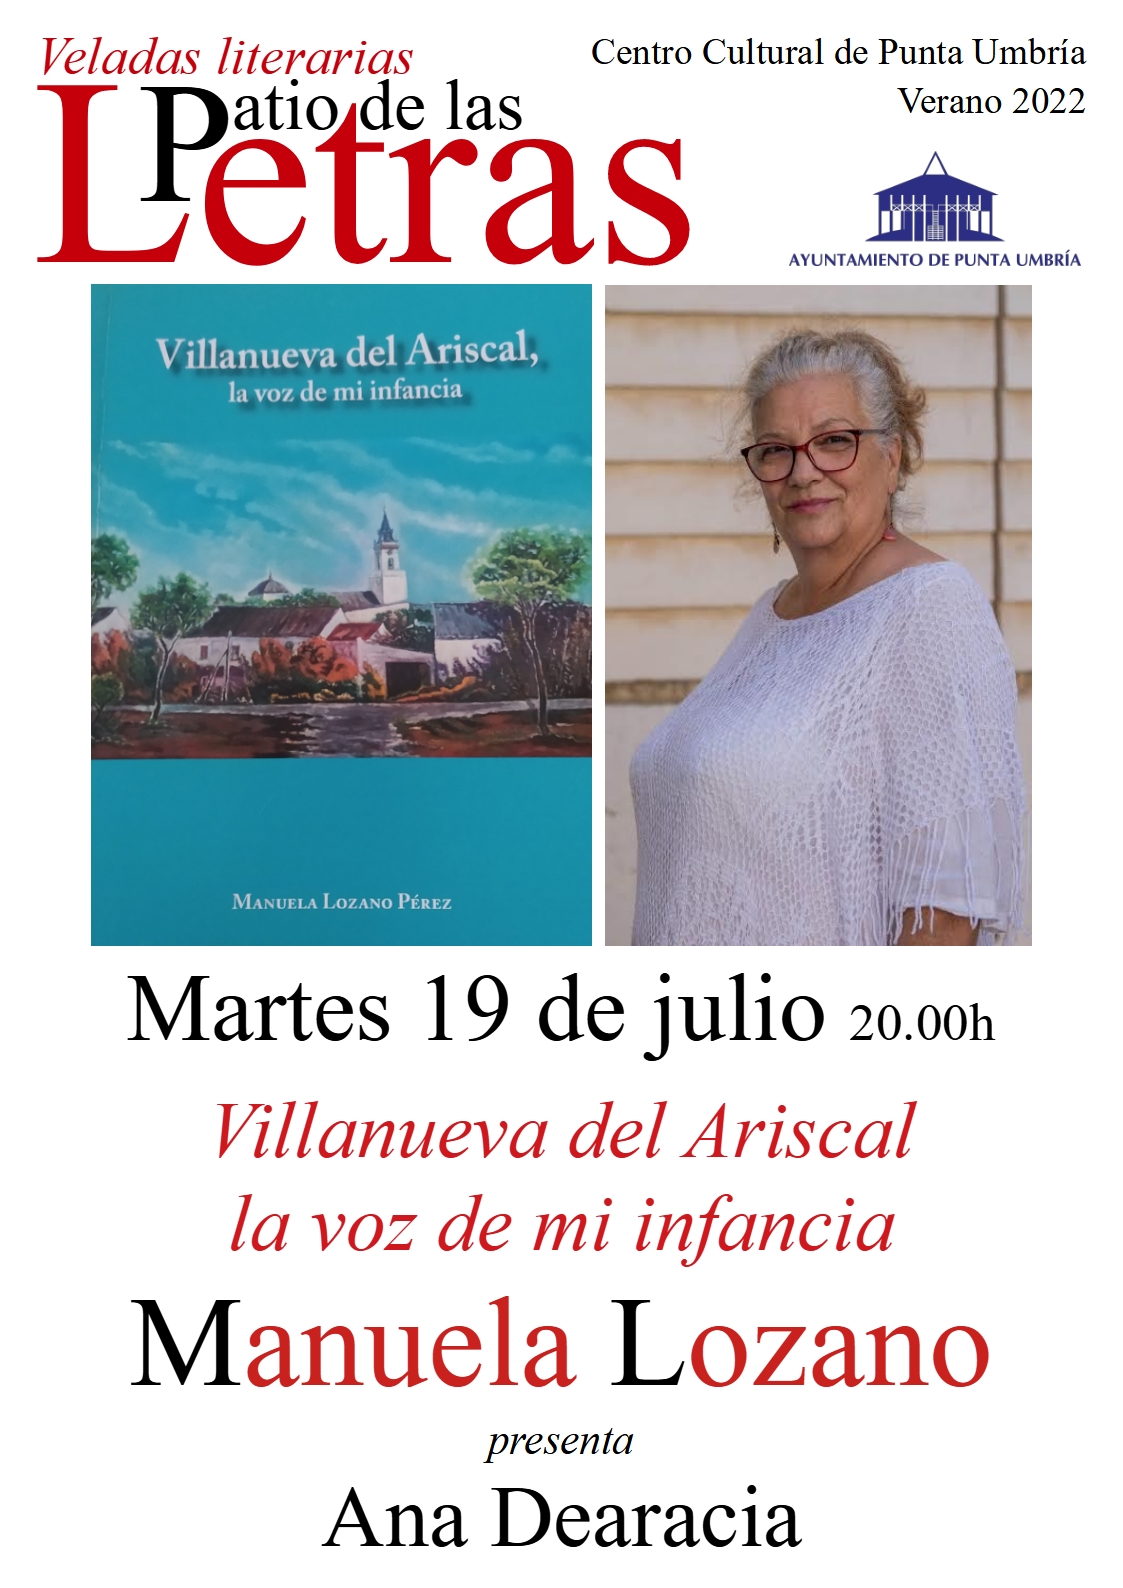 Manuela Lozano presenta mañana en Punta Umbría 'Villanueva del Ariscal, la voz de mi infancia'